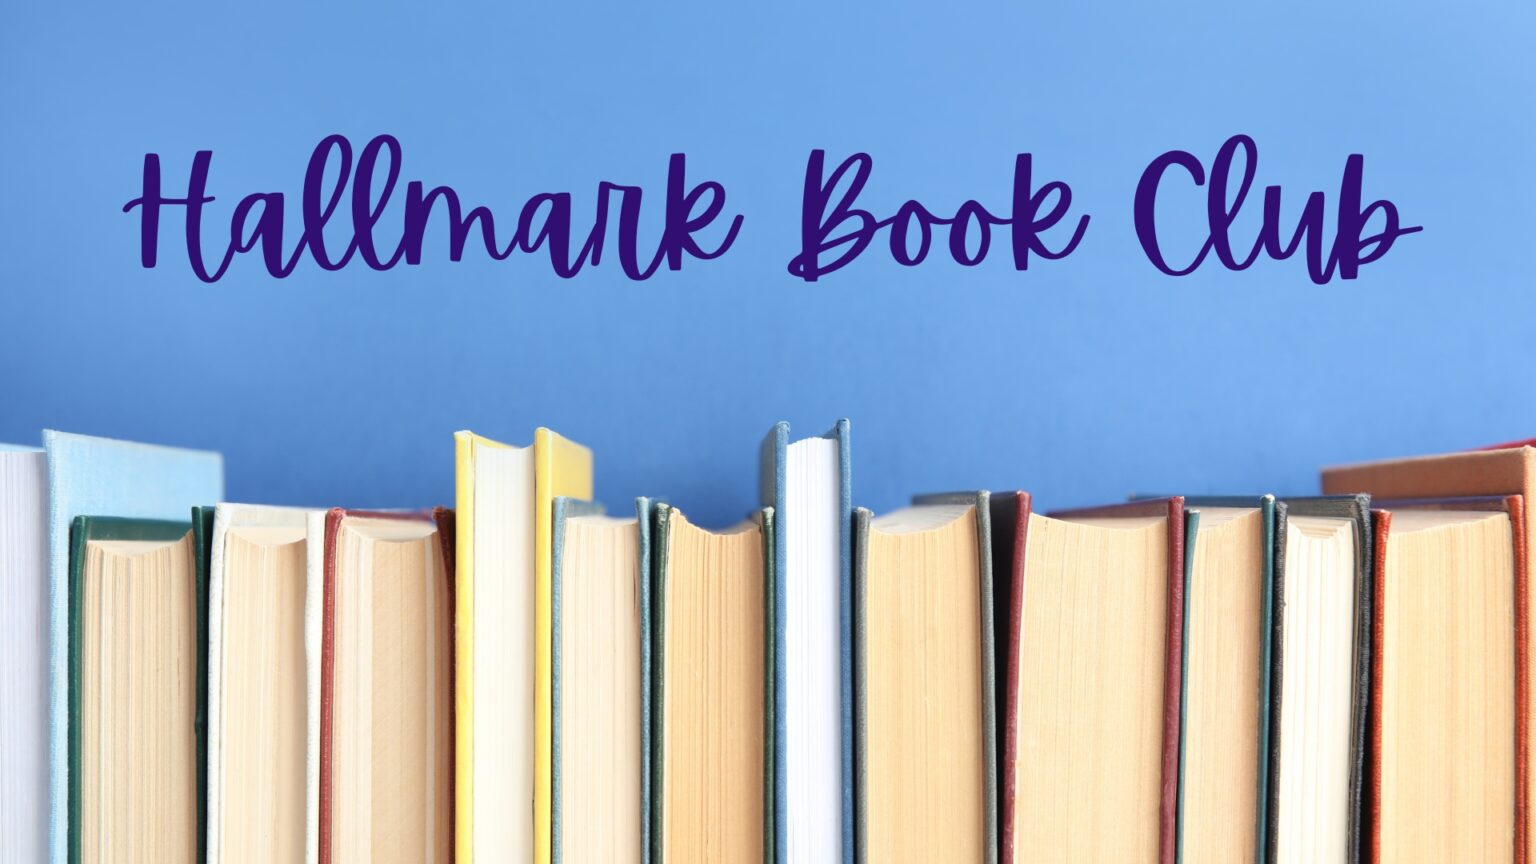 Hallmark Book Club